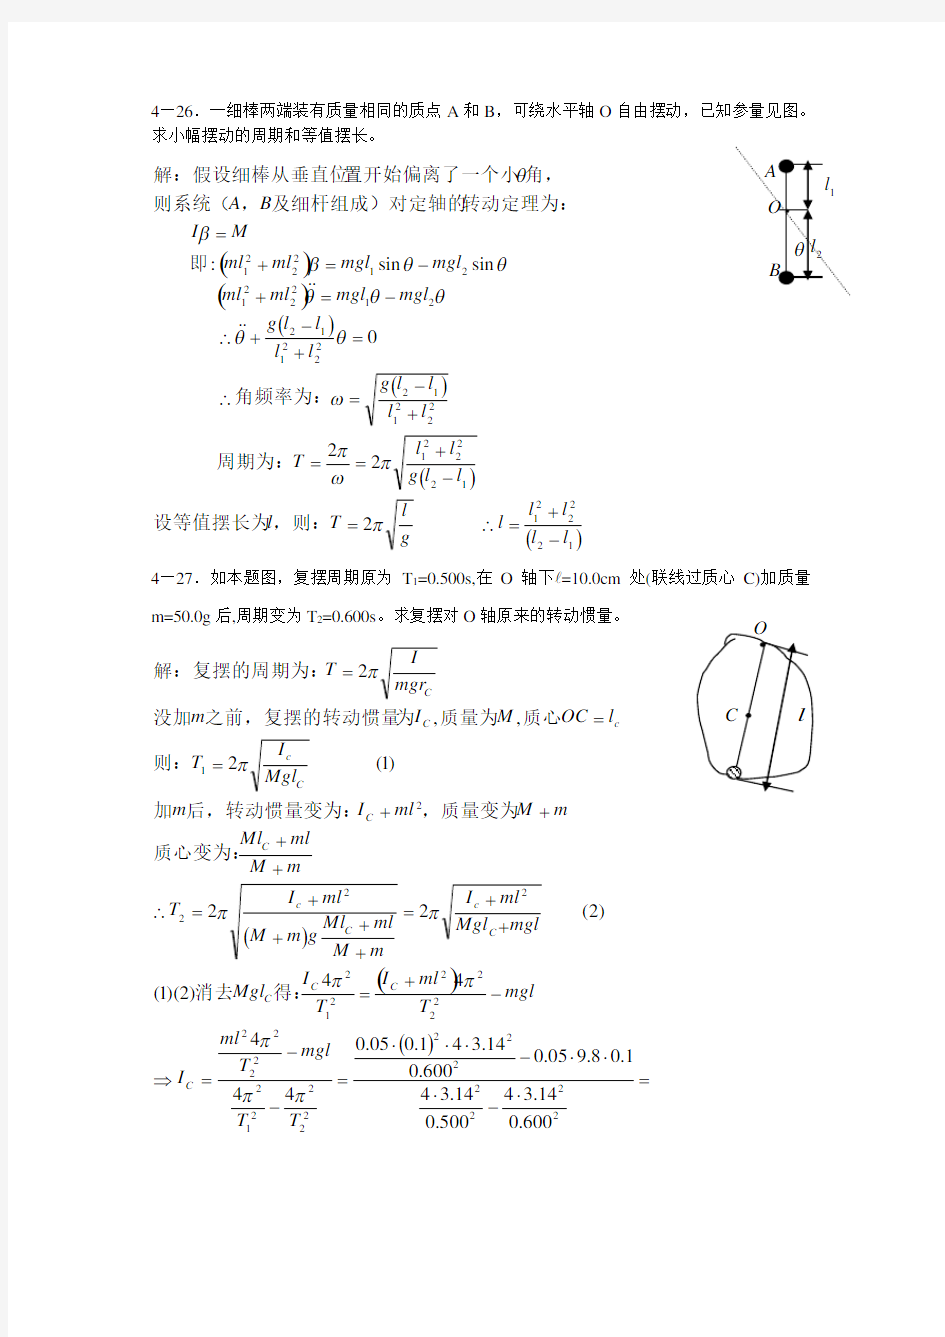 新概念物理教程 力学答案详解(四)4—24